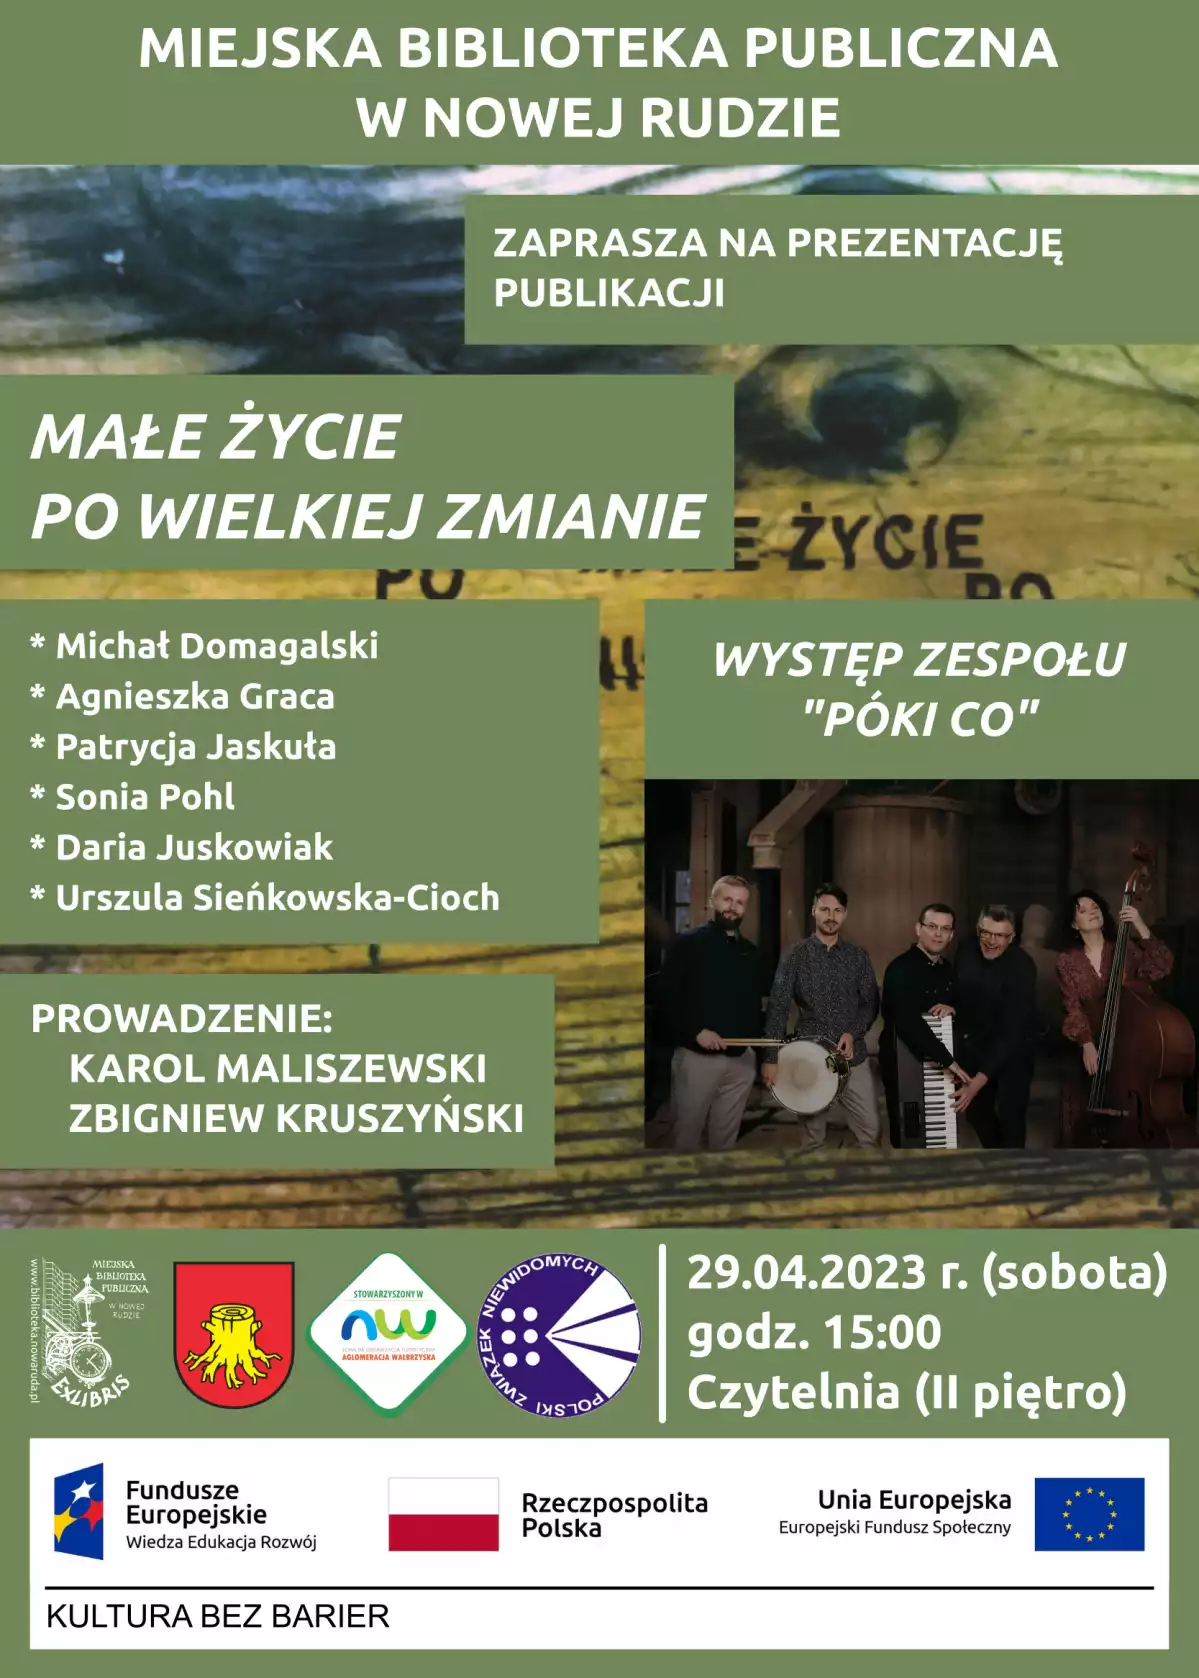 Plakat zapraszający na prezentację publikacji i koncert zespołu Póki Co.